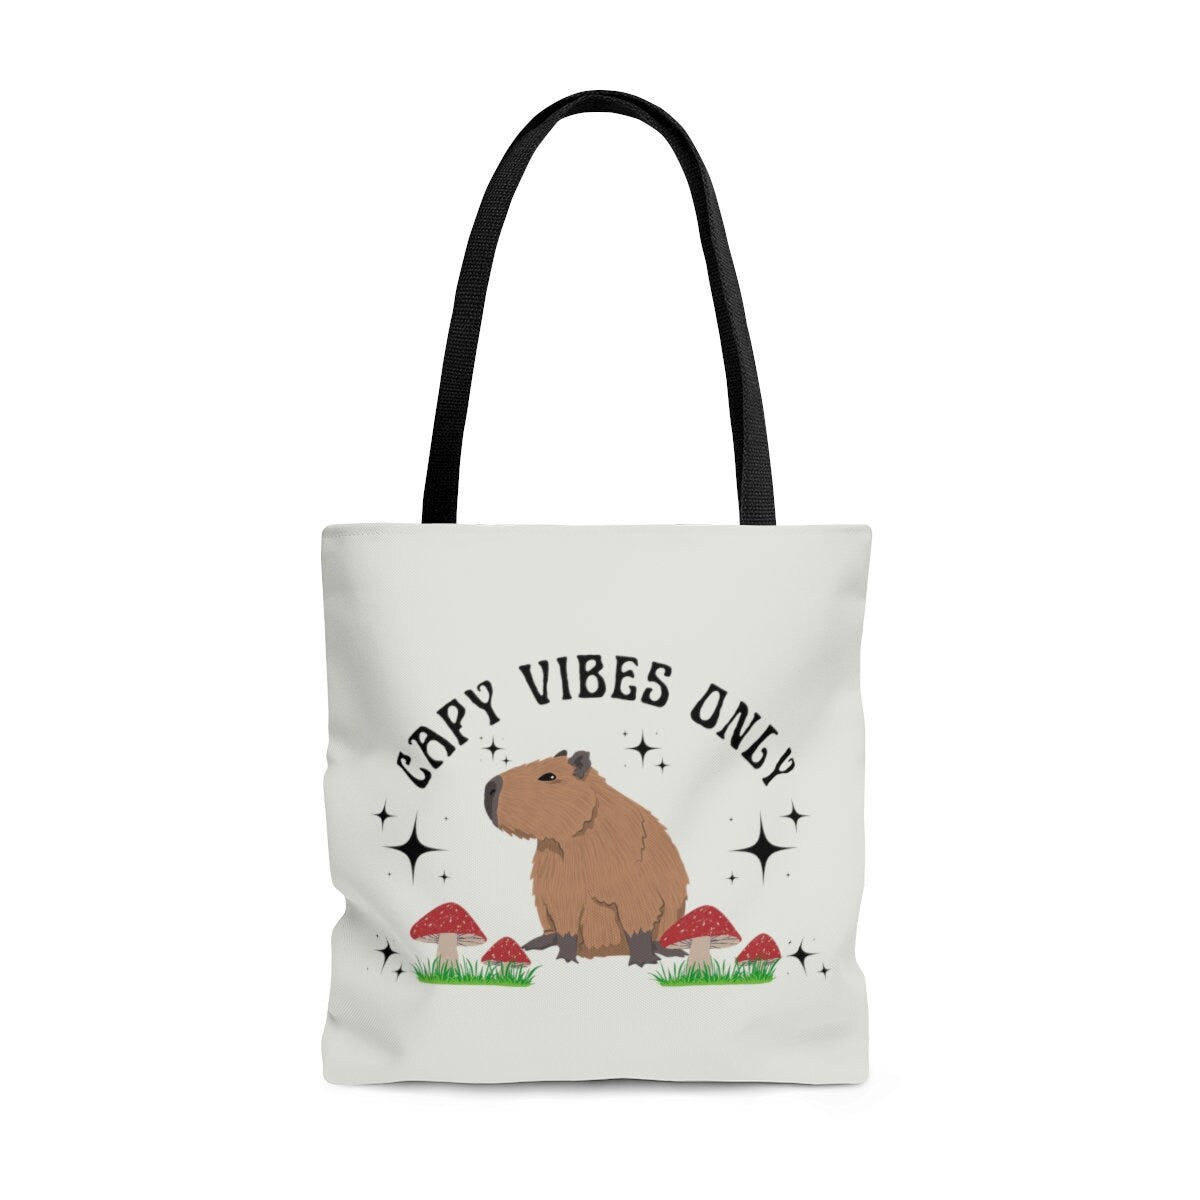 Capybara Tote Bag Capybara Gifts Mushroom Tote Bag Retro Tote Bag Capybara Capy Vibes Only Gifts For Teens Gift For Tweens Capybara Lover